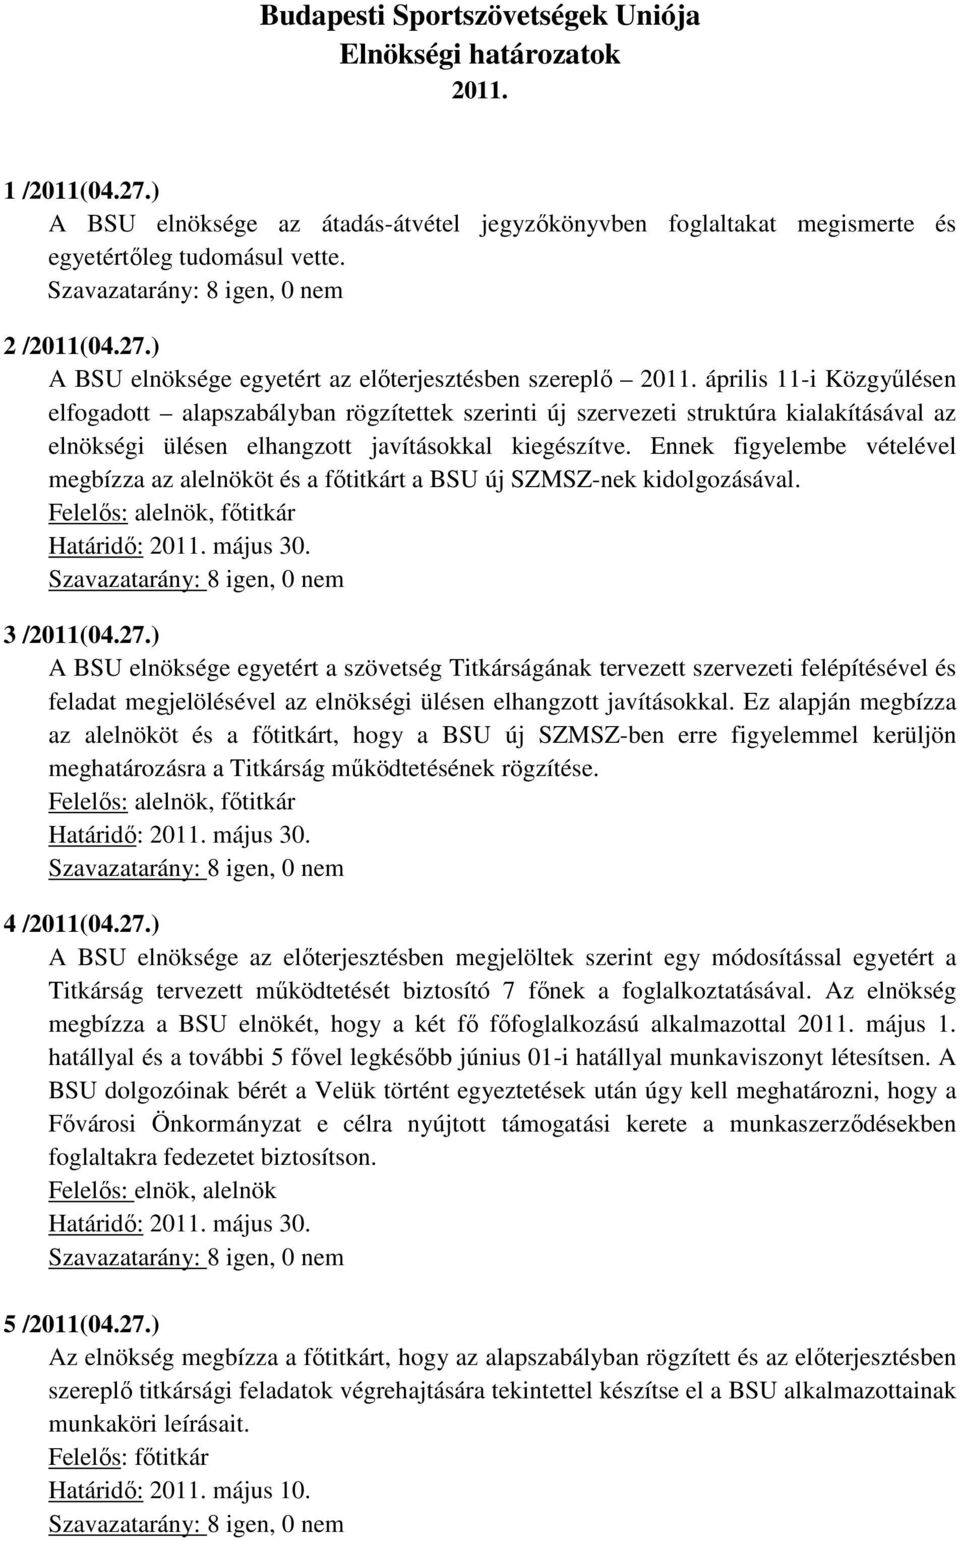 Ennek figyelembe vételével megbízza az alelnököt és a fıtitkárt a BSU új SZMSZ-nek kidolgozásával. Felelıs: alelnök, fıtitkár 3 /2011(04.27.